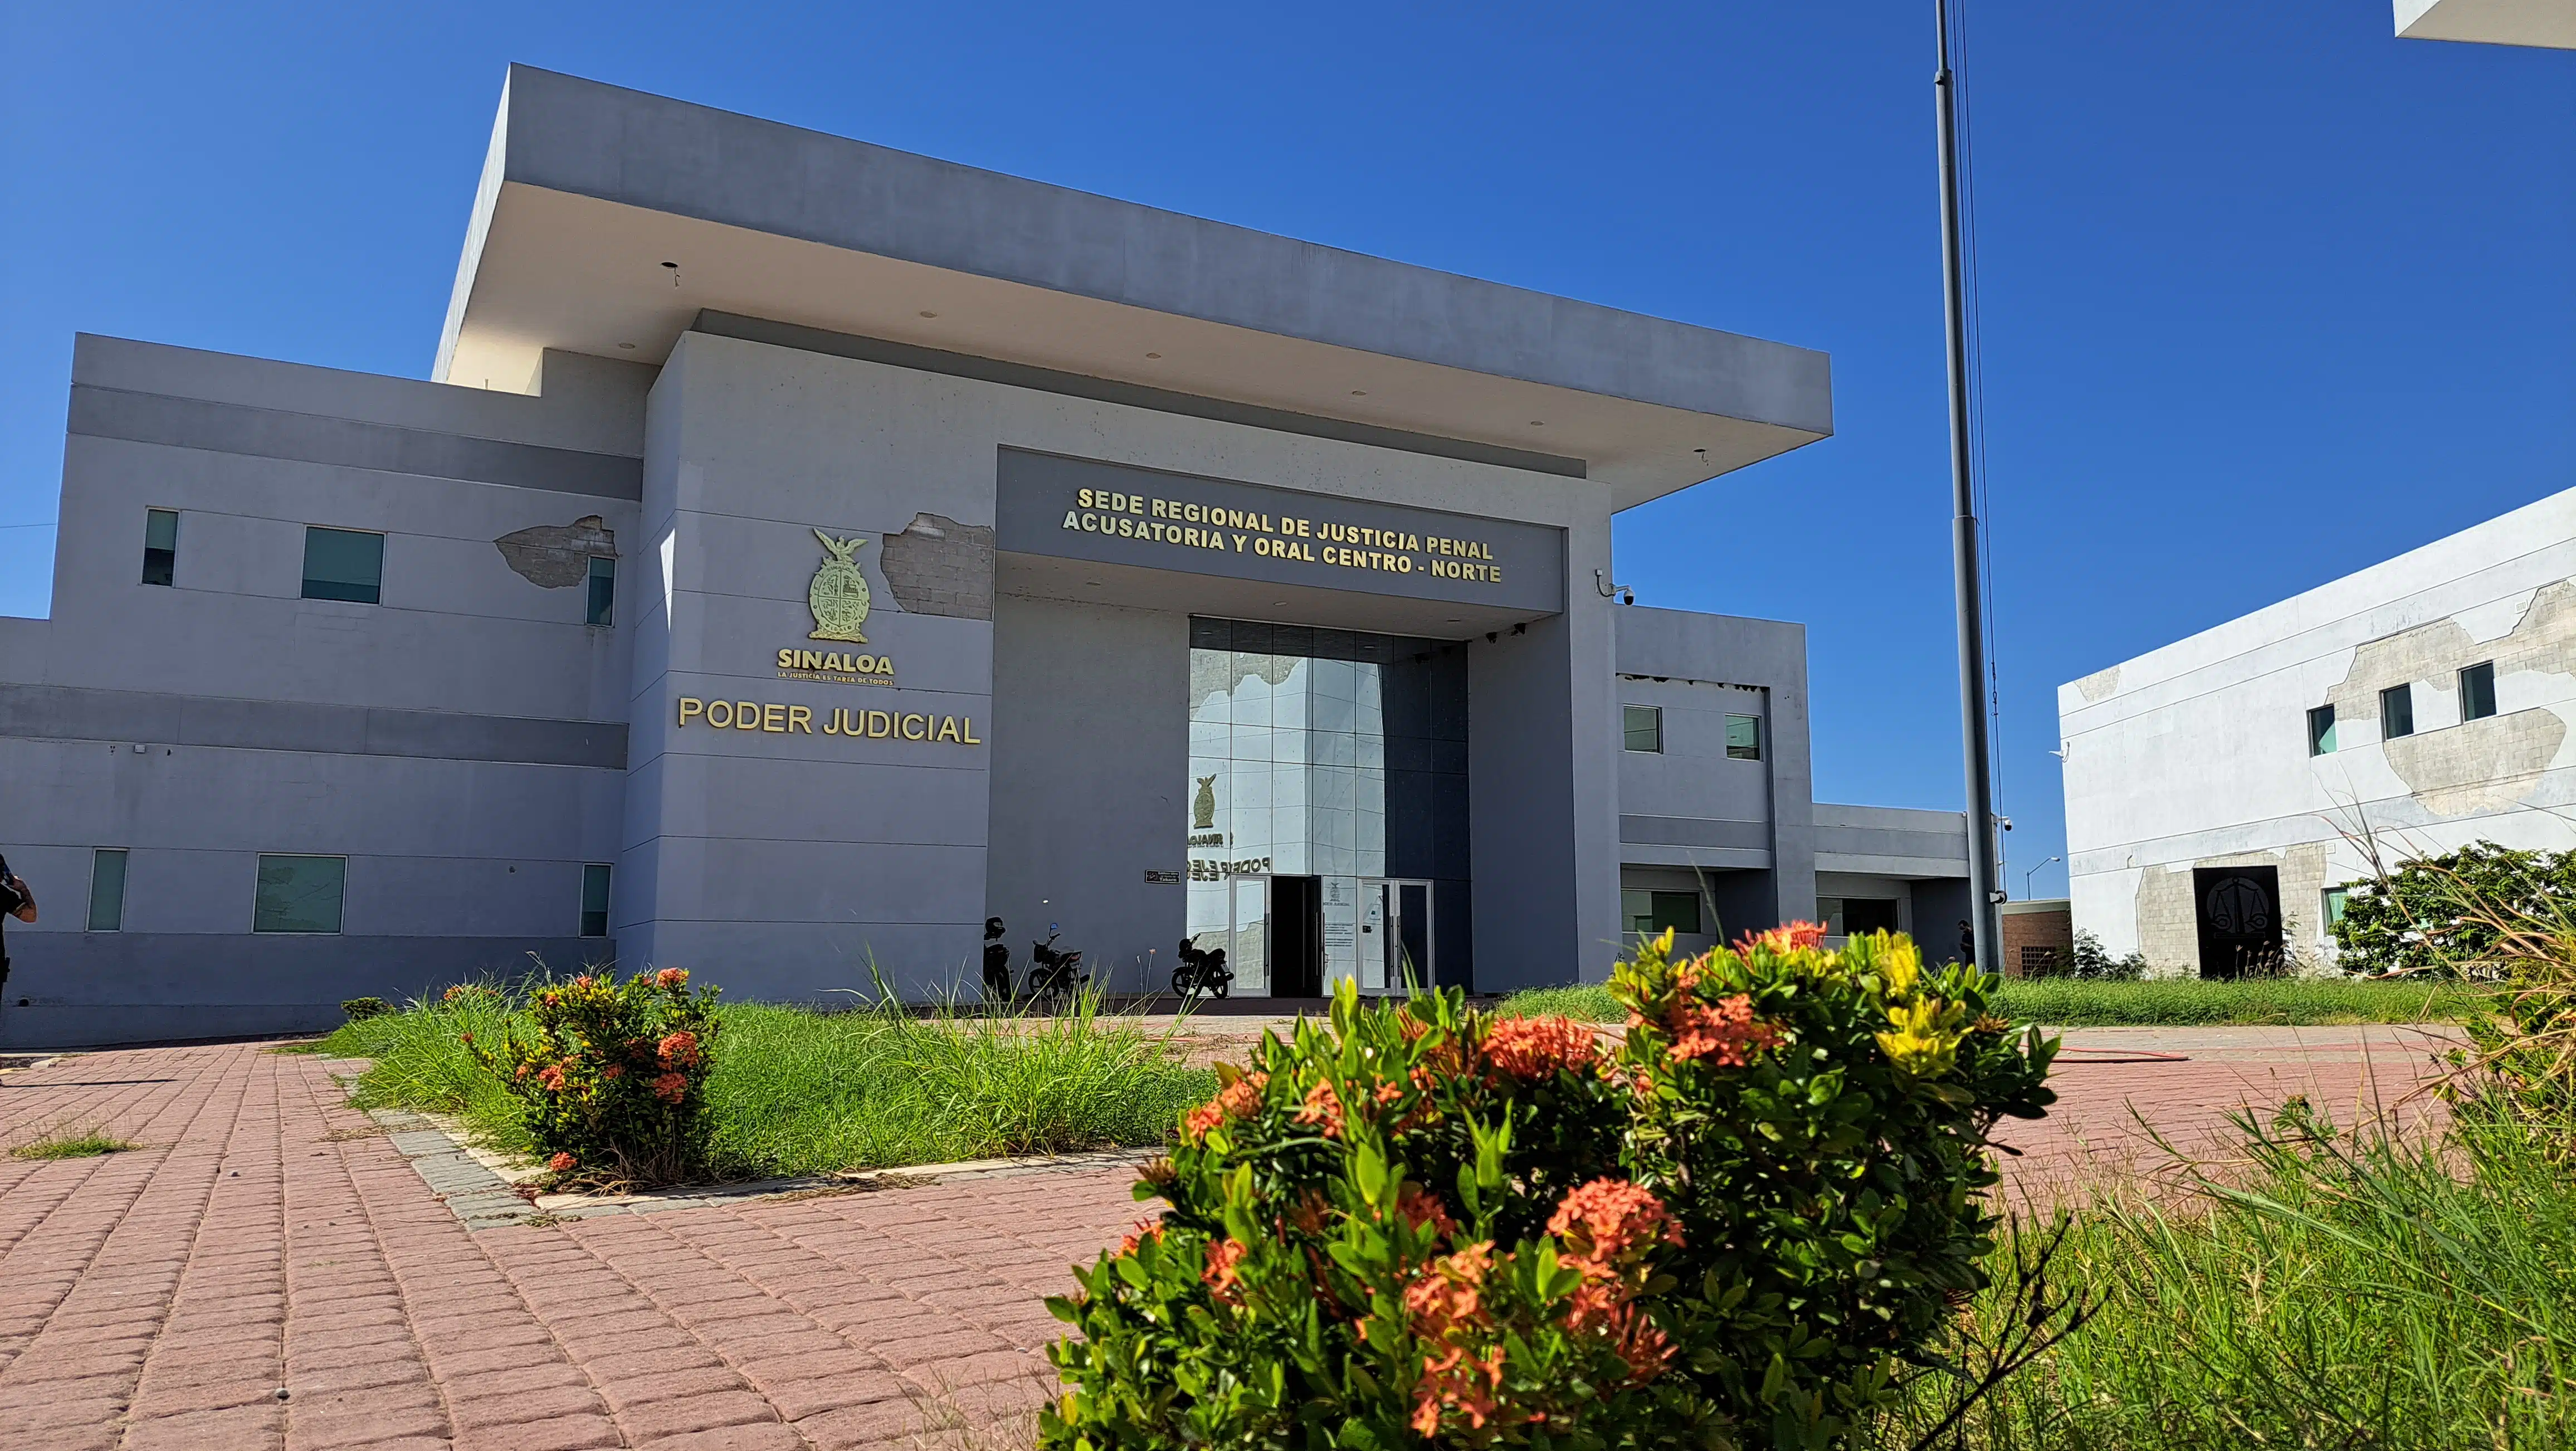 Sede Regional de Justicia Penal Acusatoria y Oral Centro Norte